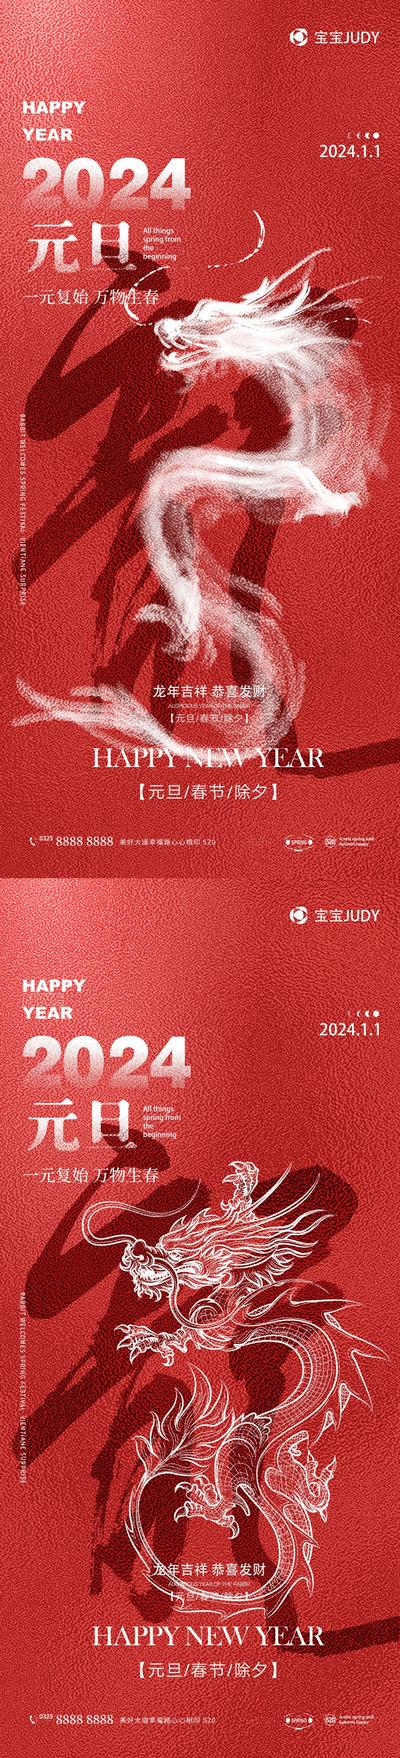 南门网 广告 海报 节日 元旦 新年 龙年 2024 龙 书法字 系列